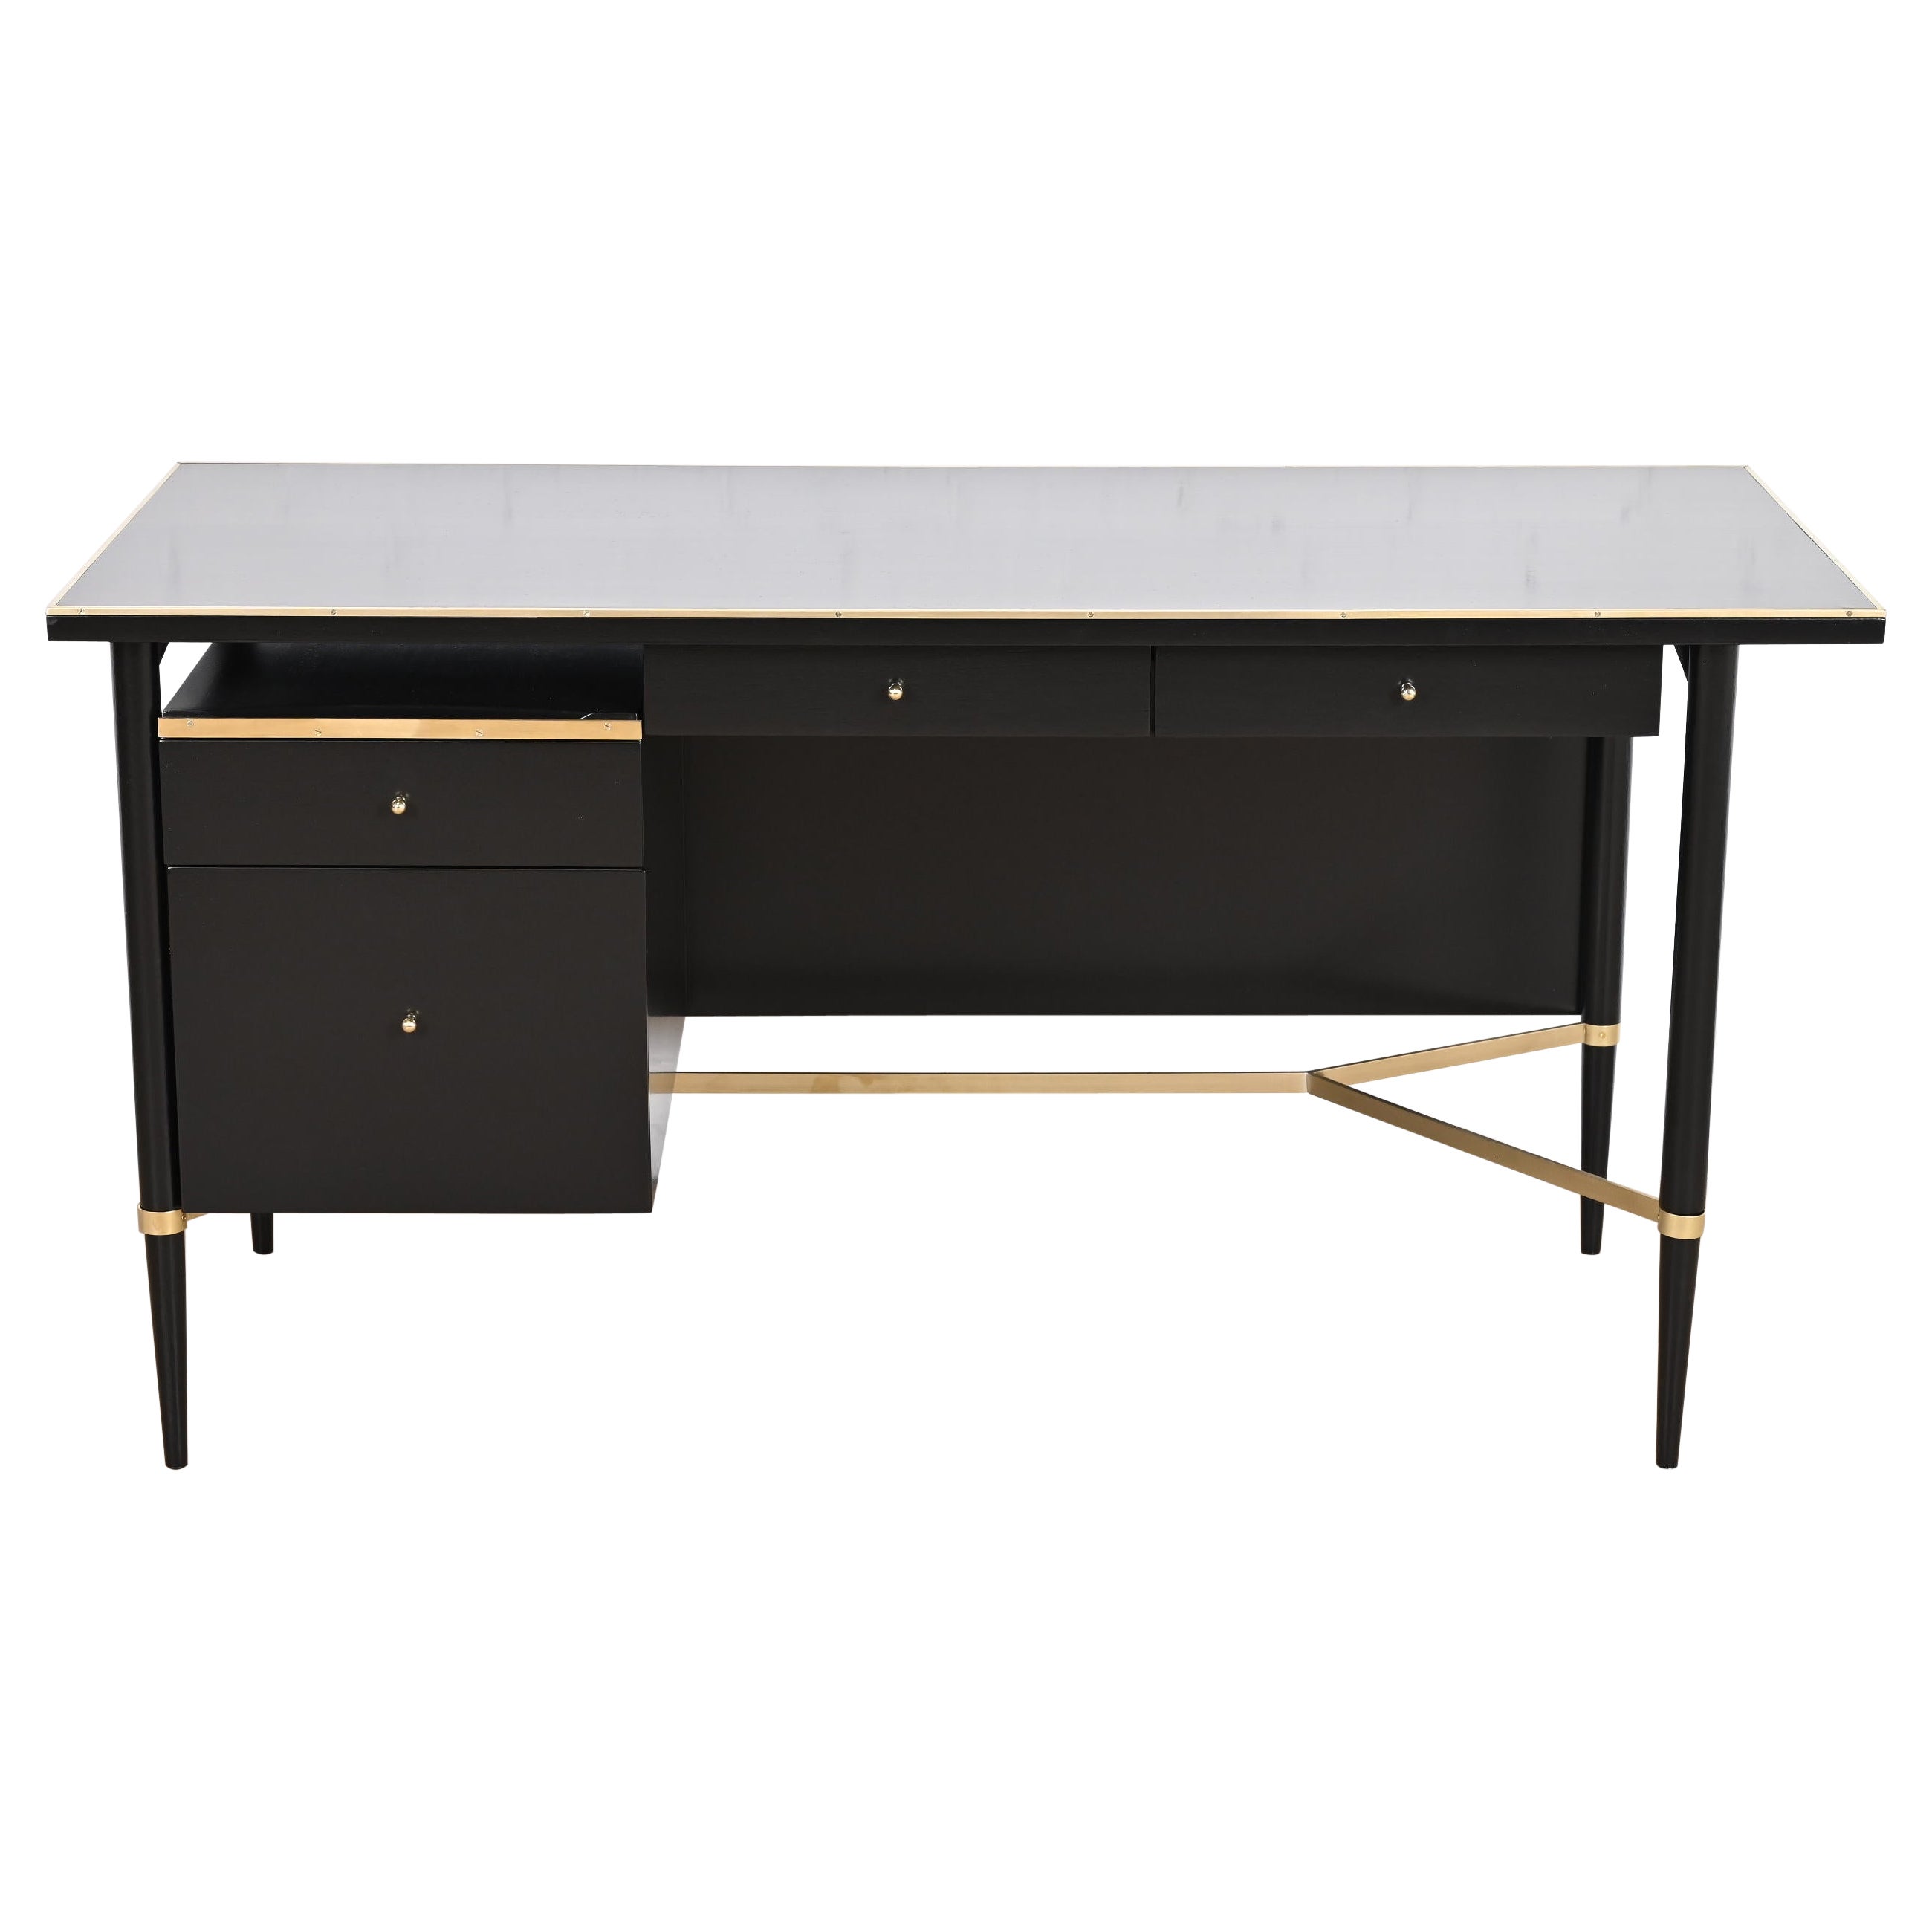 Schreibtisch aus der Paul McCobb Connoisseur Kollektion, schwarzer Lack und Messing, neu lackiert